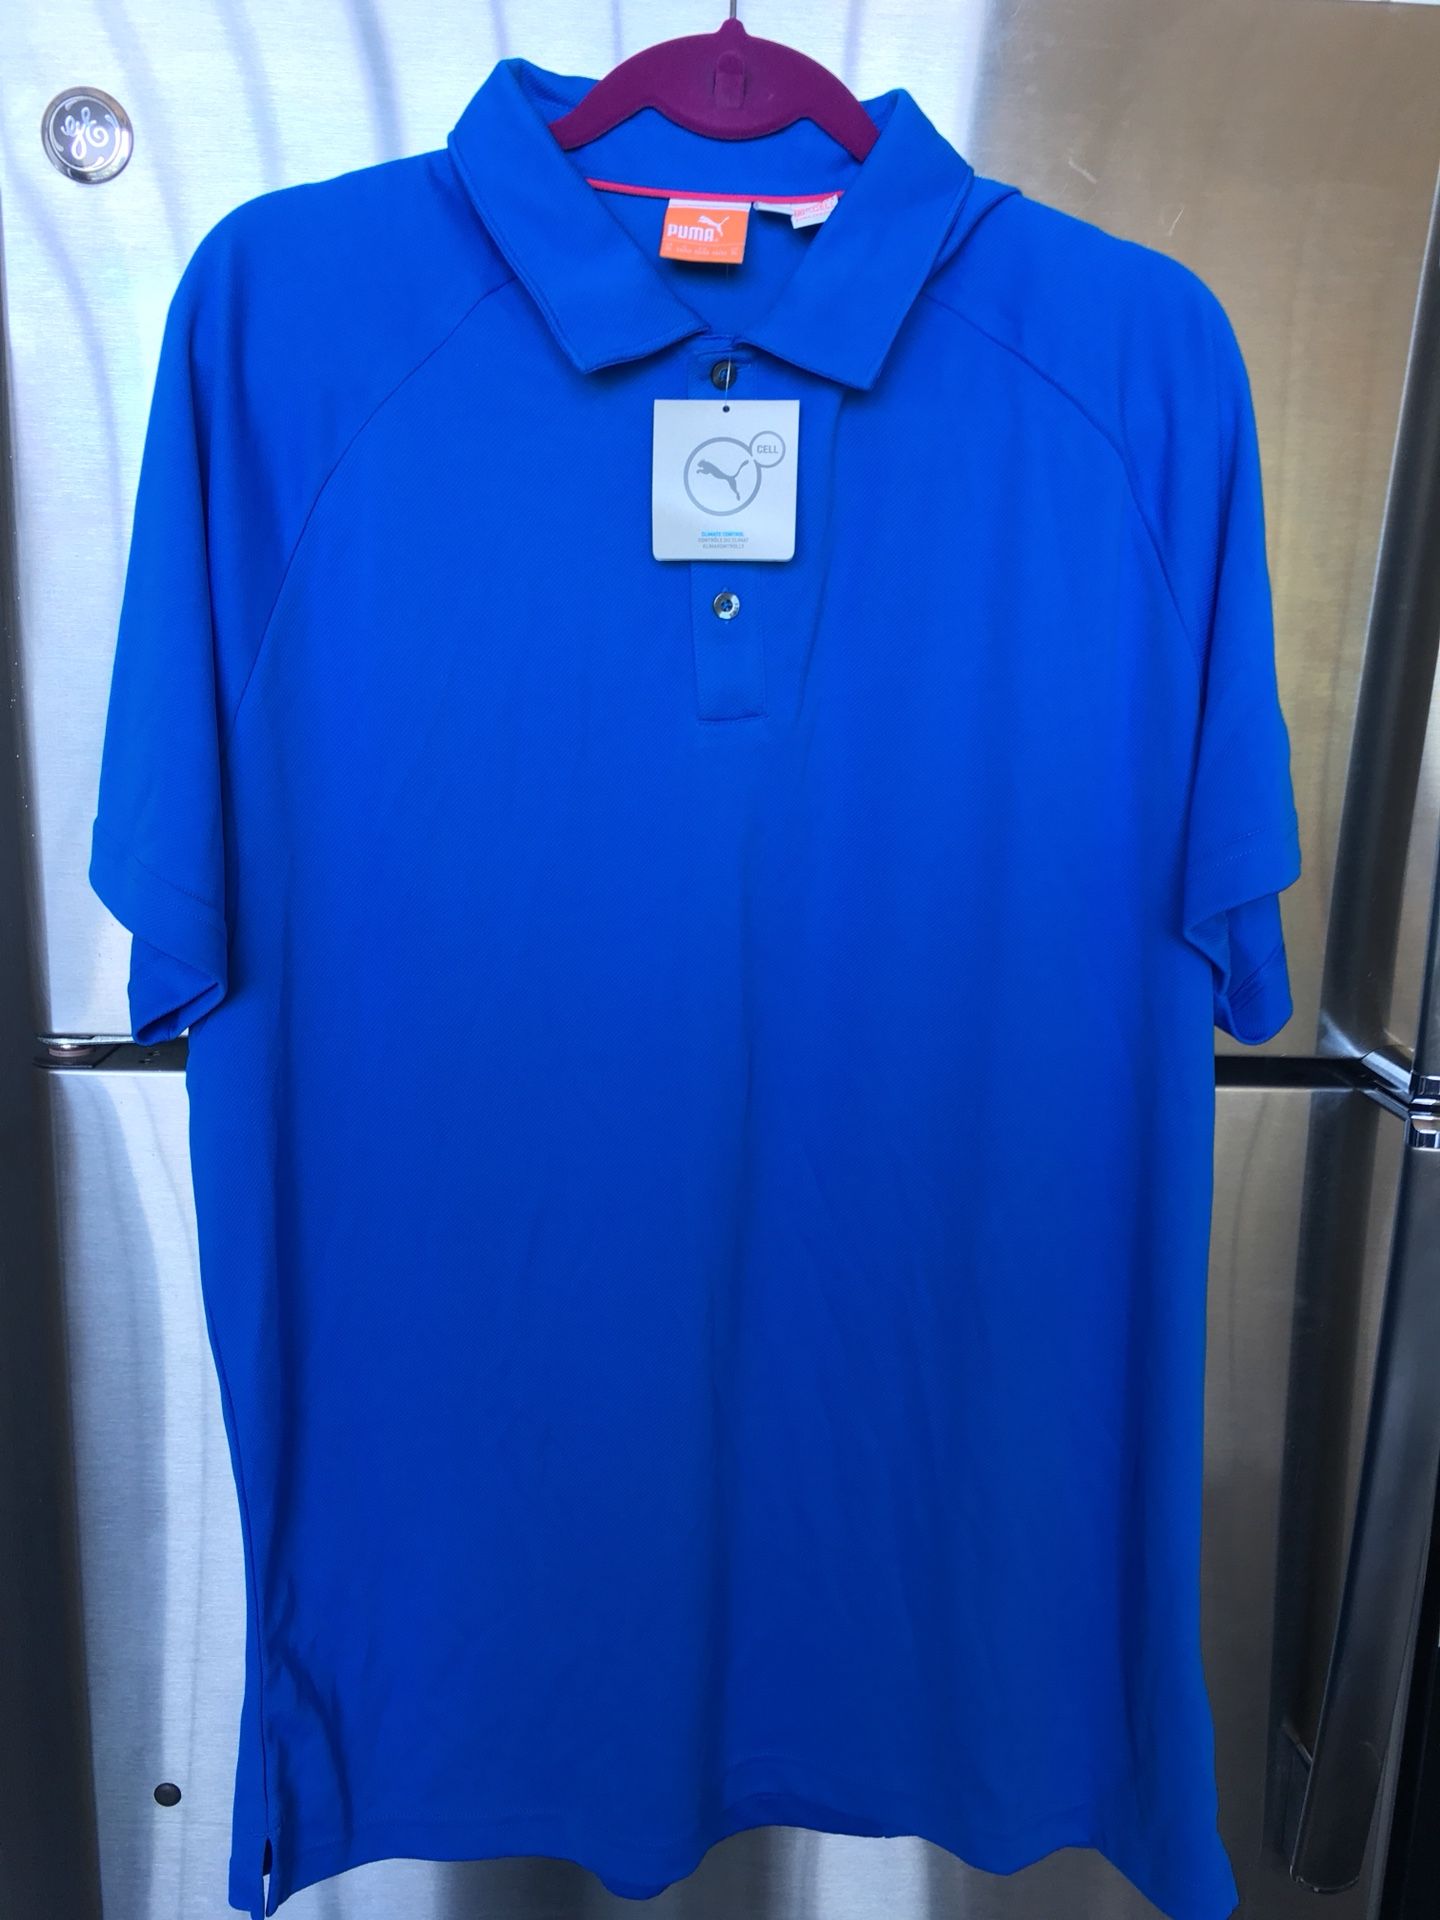 Puma men’s golf/tennis/polo shirt. Size XL. Moisture wicking technology.